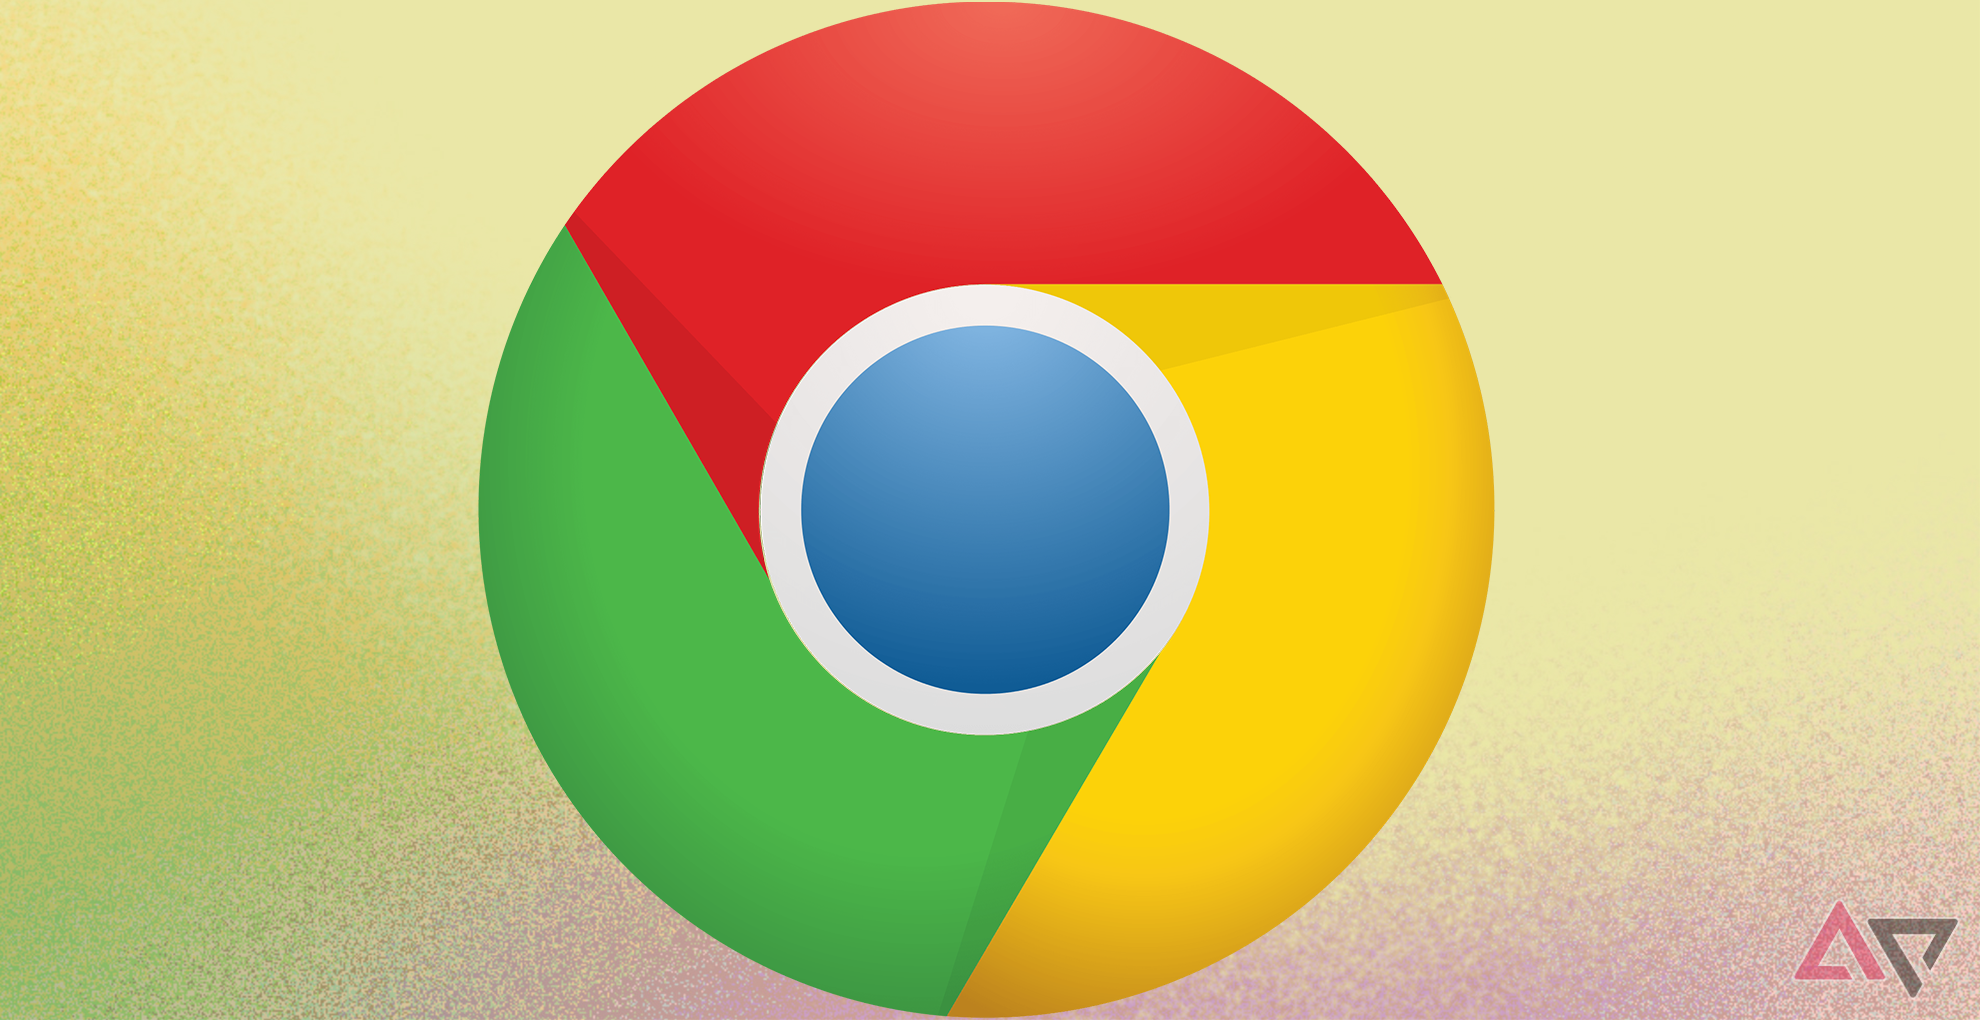 O navegador Google Chrome contra um fundo amarelo e roxo.